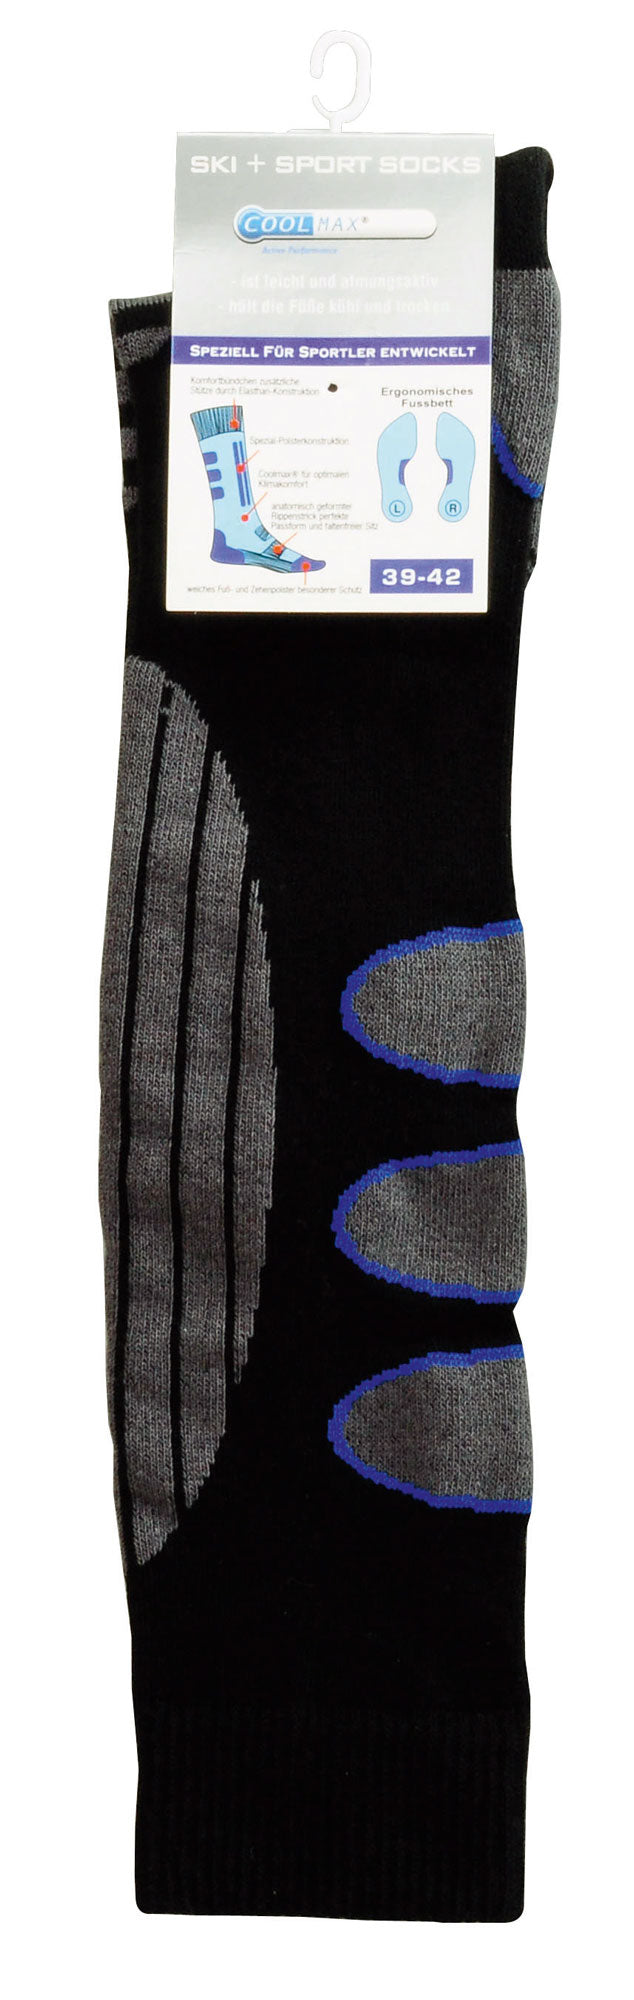 Ski socks Coolmax® ski socks ski snowboard socks knee socks thermal socks